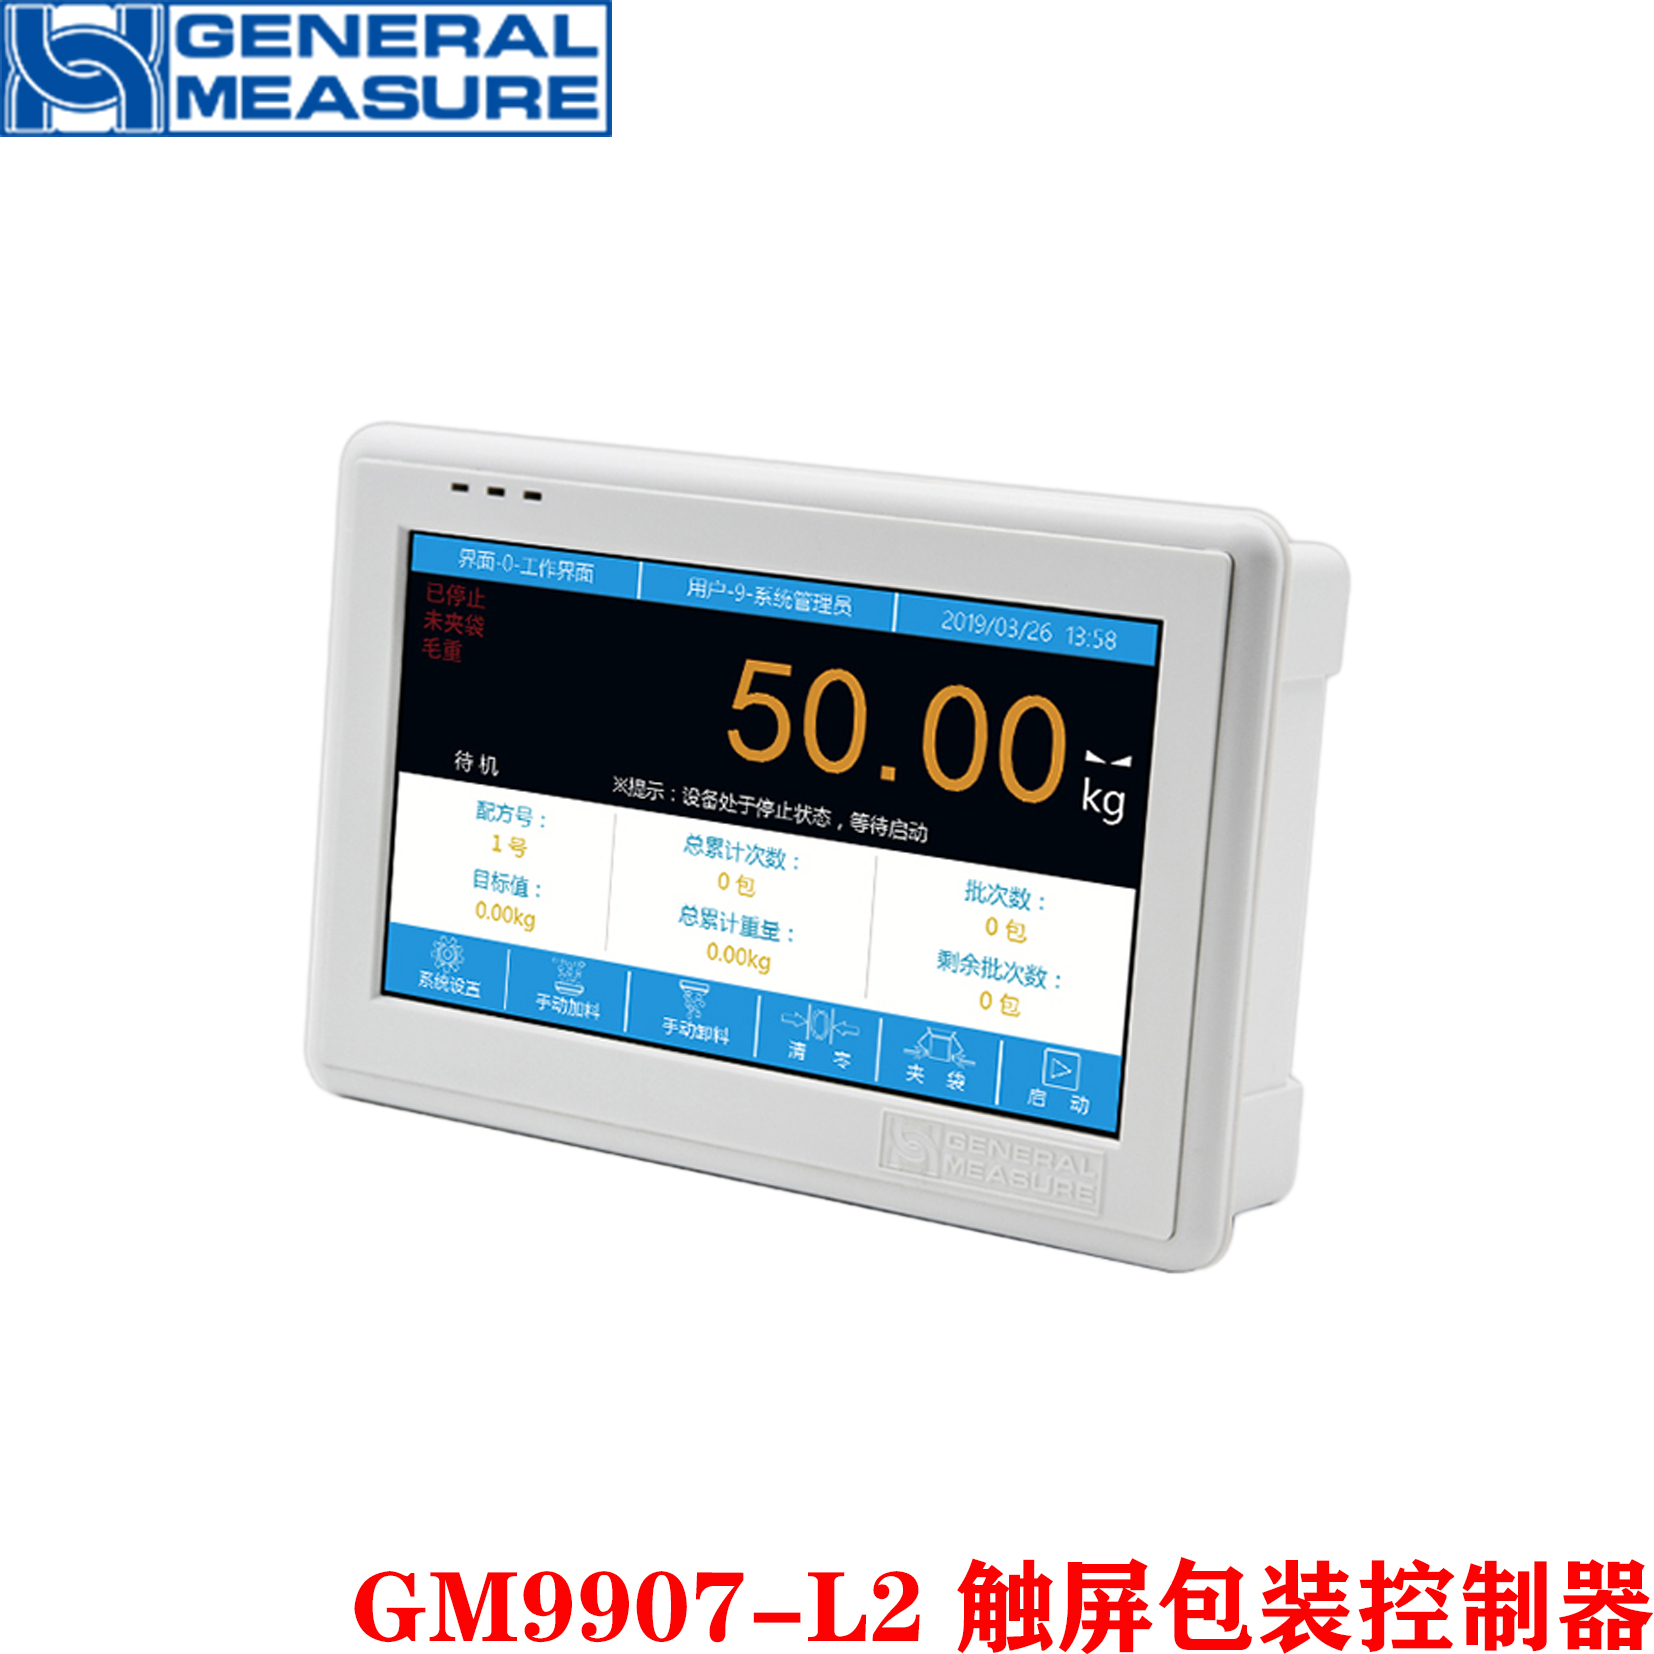 GM9907-L2触屏包装控制器 称重仪表 工业用称重显示器